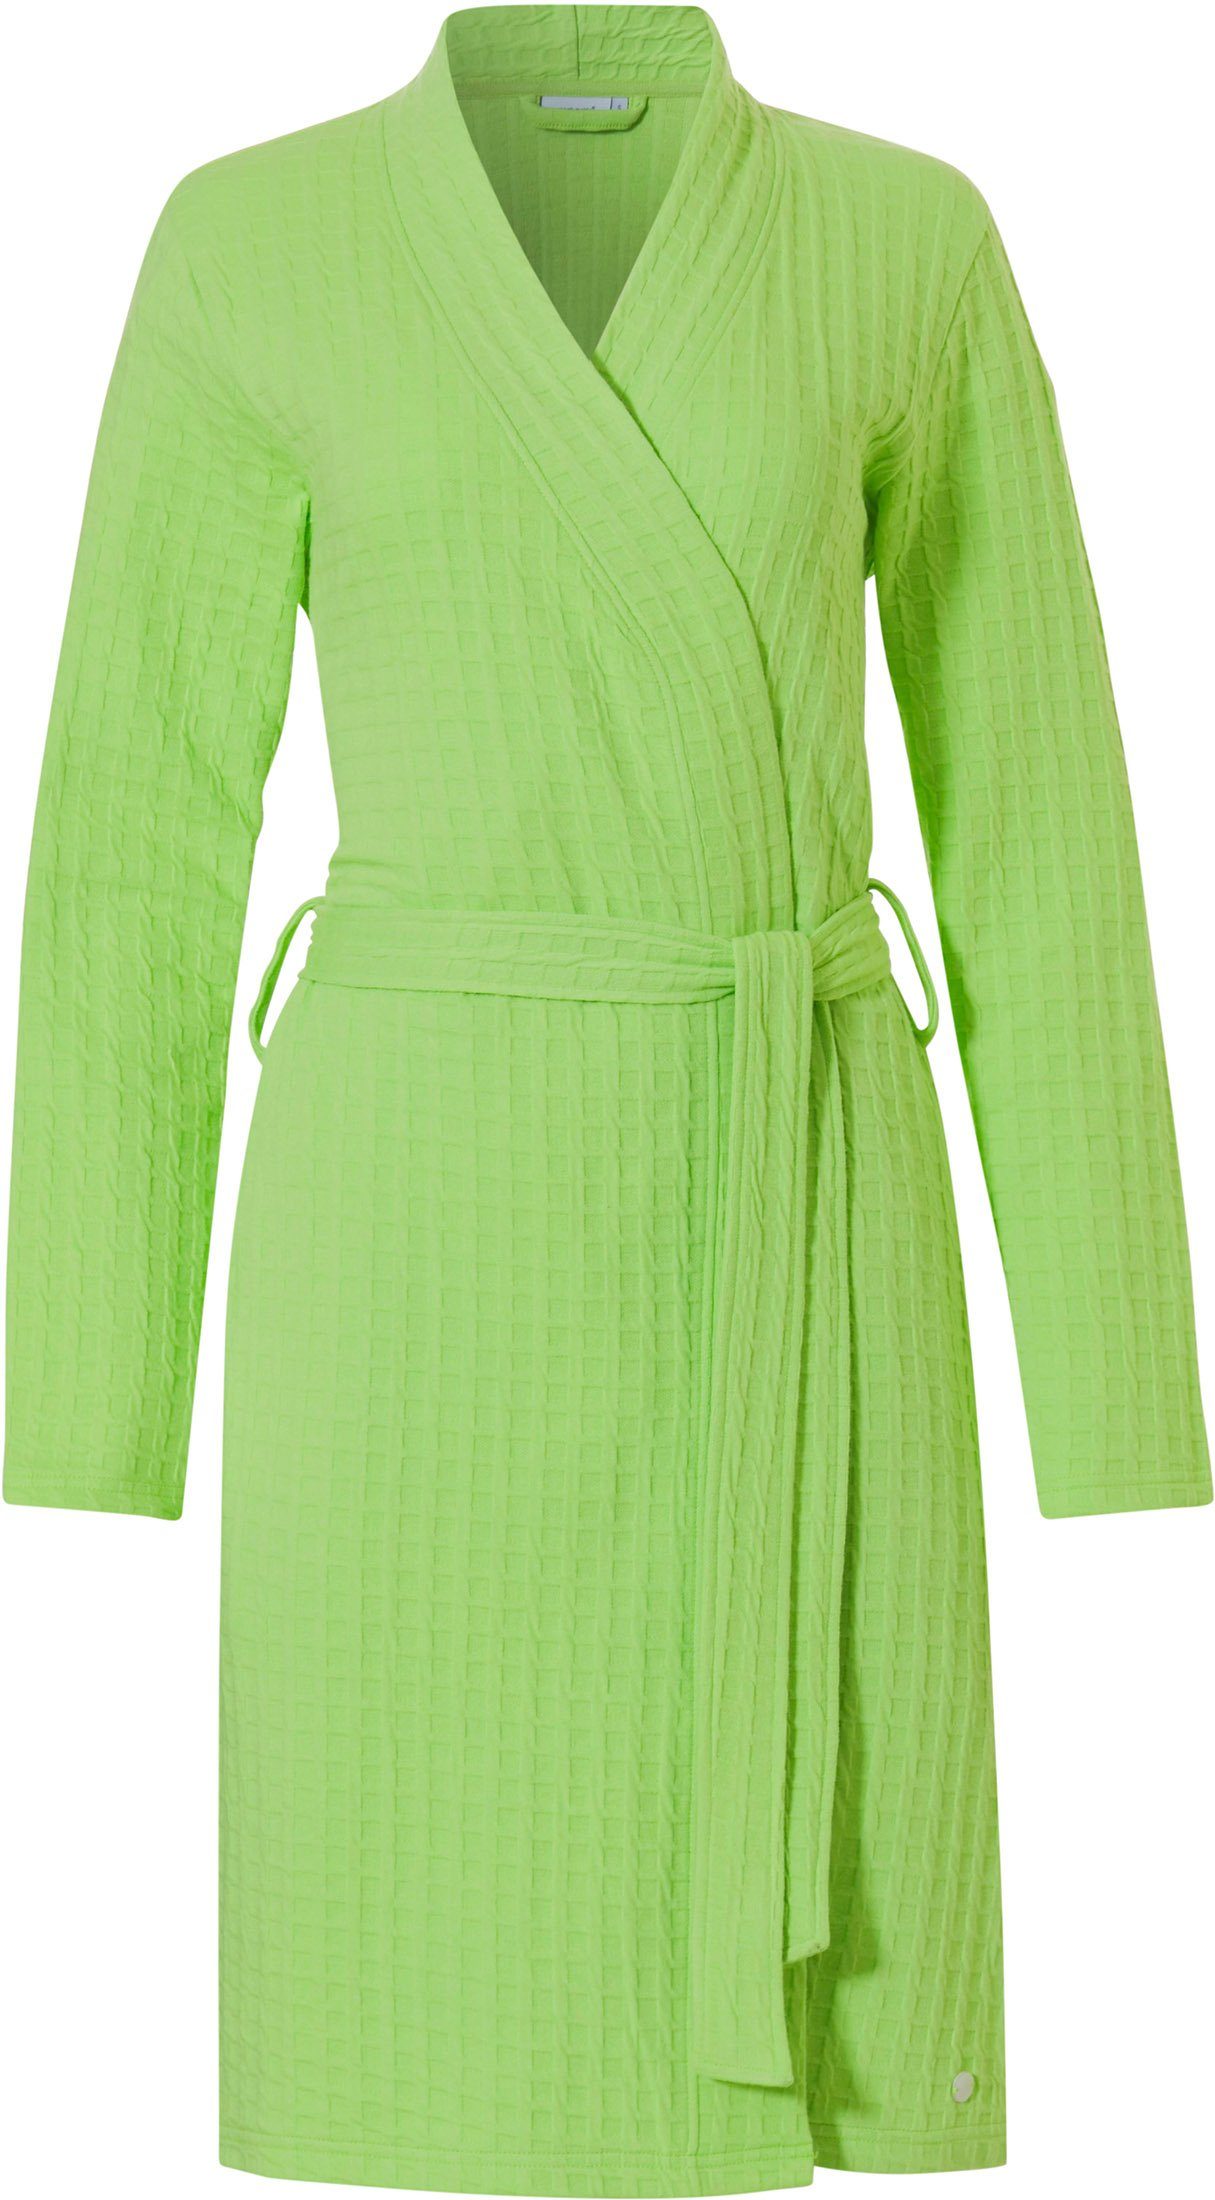 Kimono green Baumwollmischung, Damen Gürtel, Pastunette Kimono-Kragen, Morgenmantel Morgenmantel Design kurz, Modisches Form,